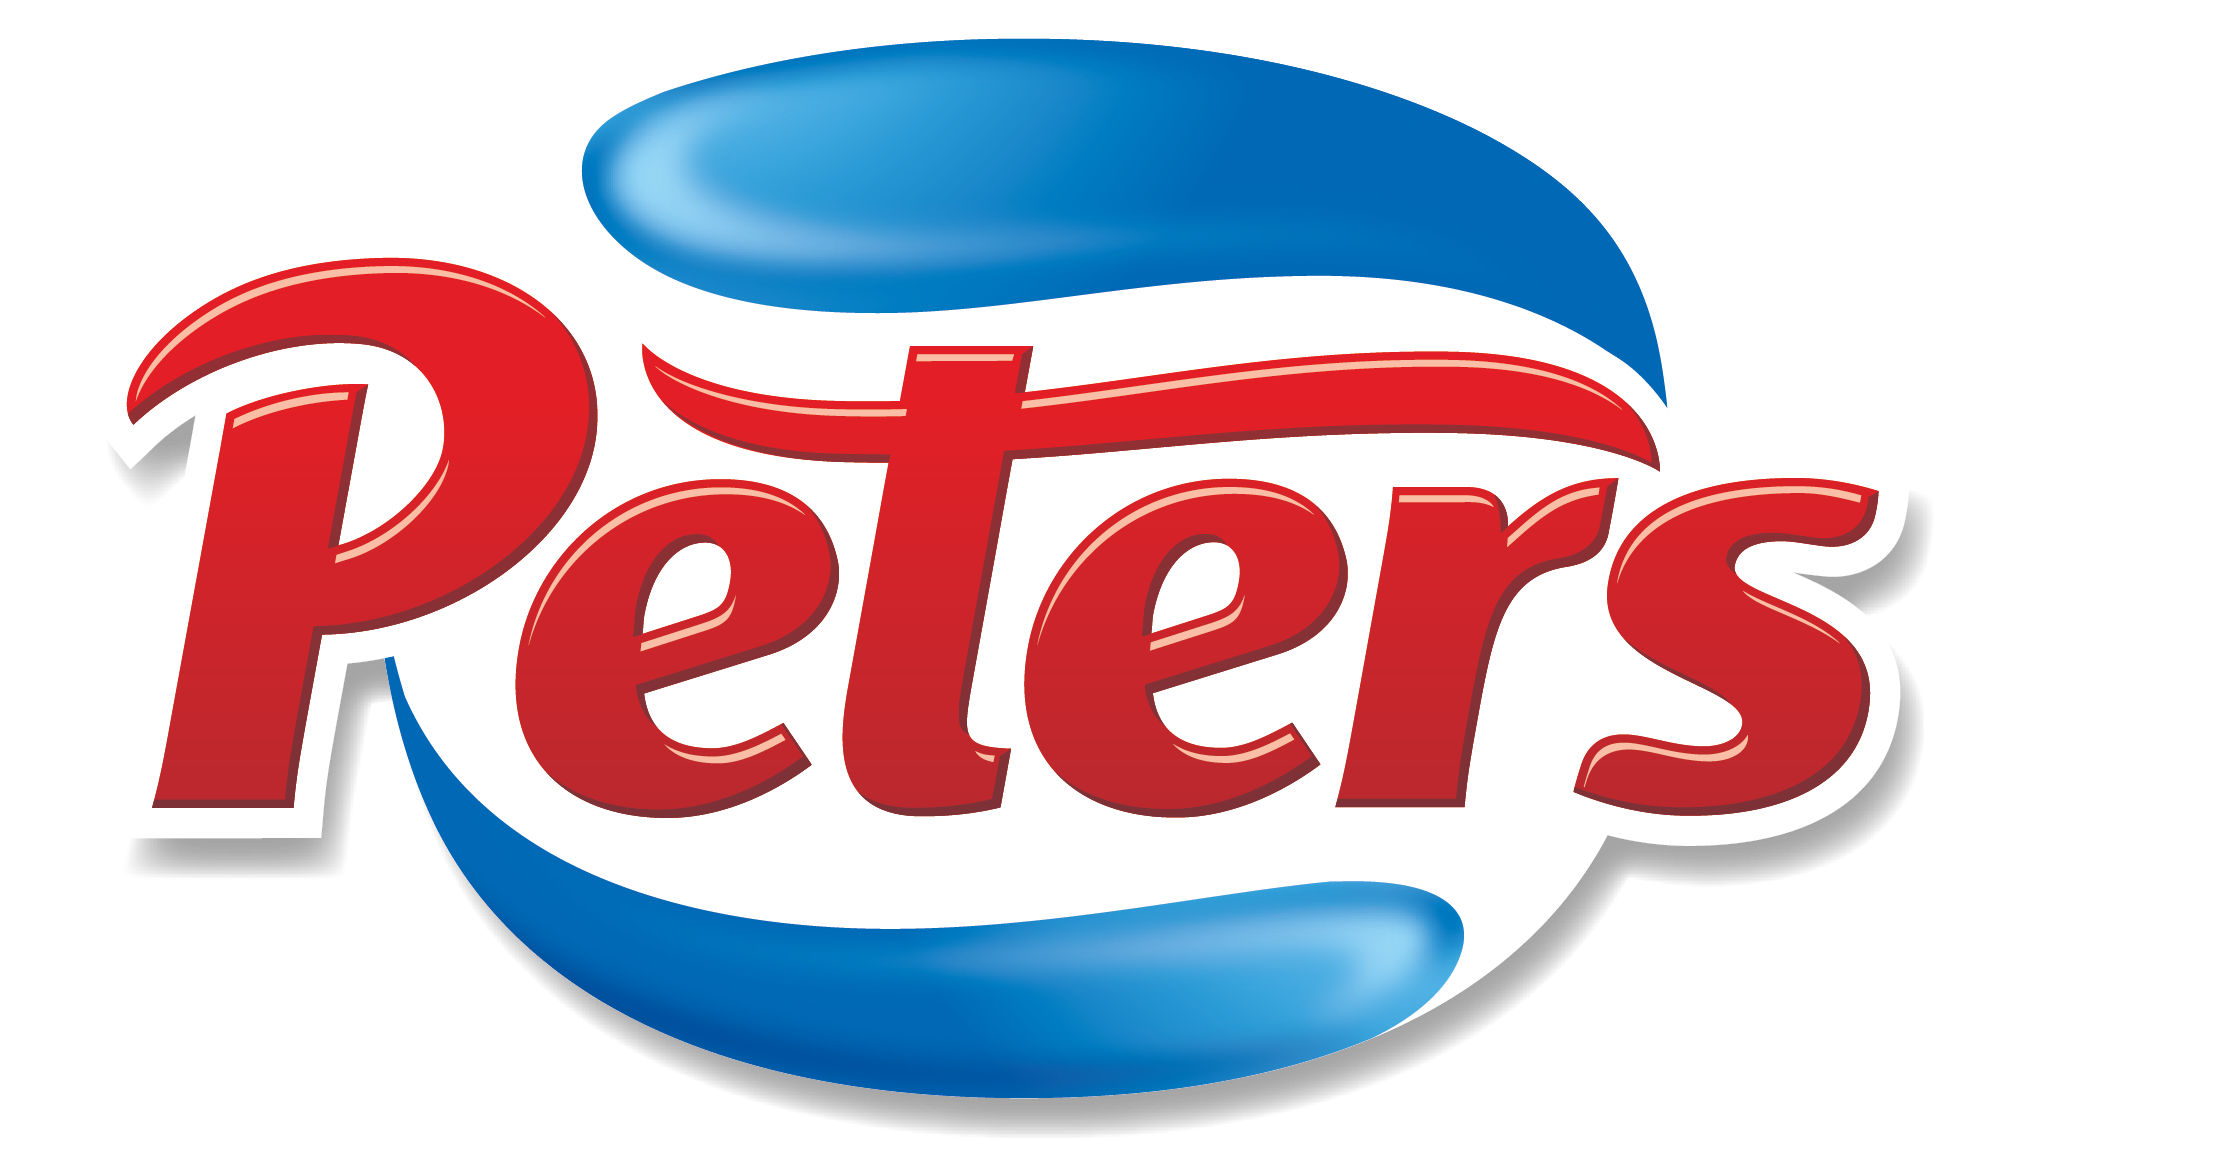 Peters Ice Cream Logo